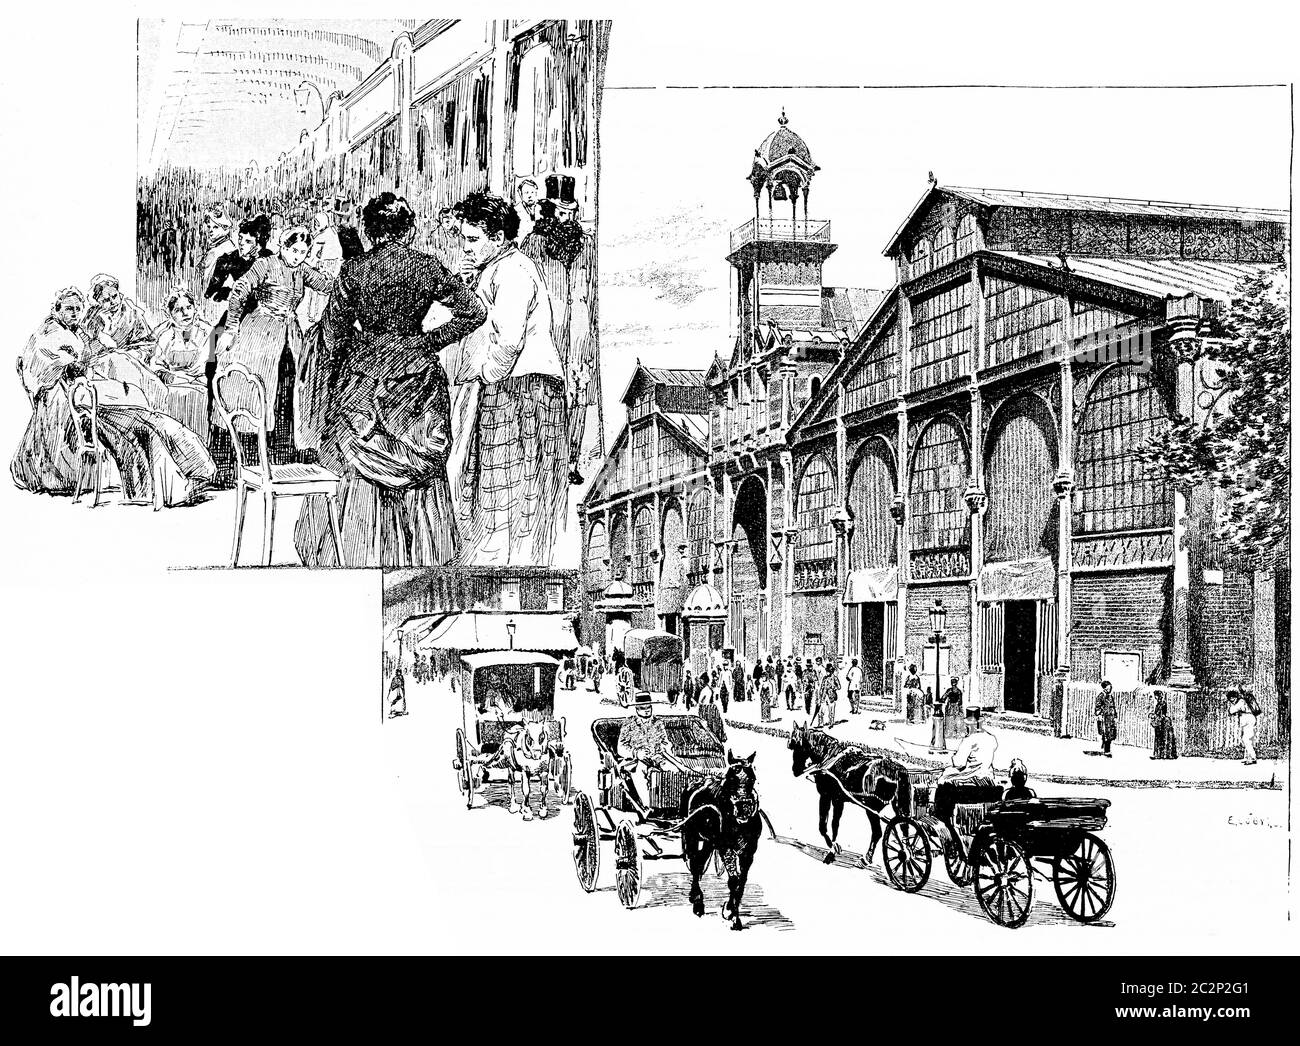 L'allée centrale, Market Hall, illustration gravée d'époque. Paris - Auguste VITU – 1890. Banque D'Images